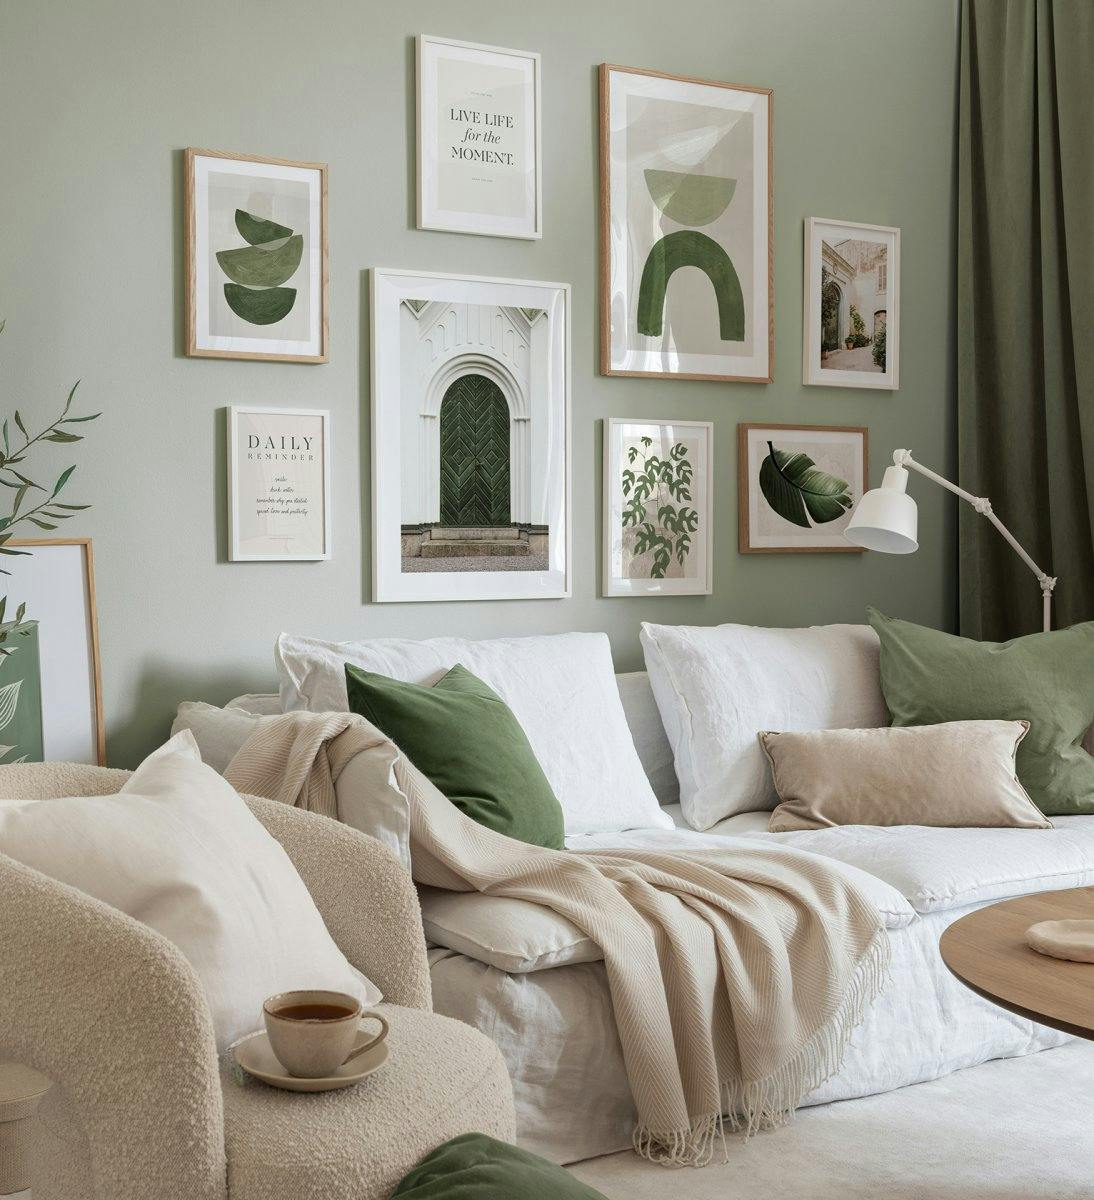 جدار معرض حديث باللون الأخضر من الرسومات والاقتباسات وملصقات الهندسة المعمارية مع إطارات خشب البلوط والخشب الأبيض لغرفة المعيشة